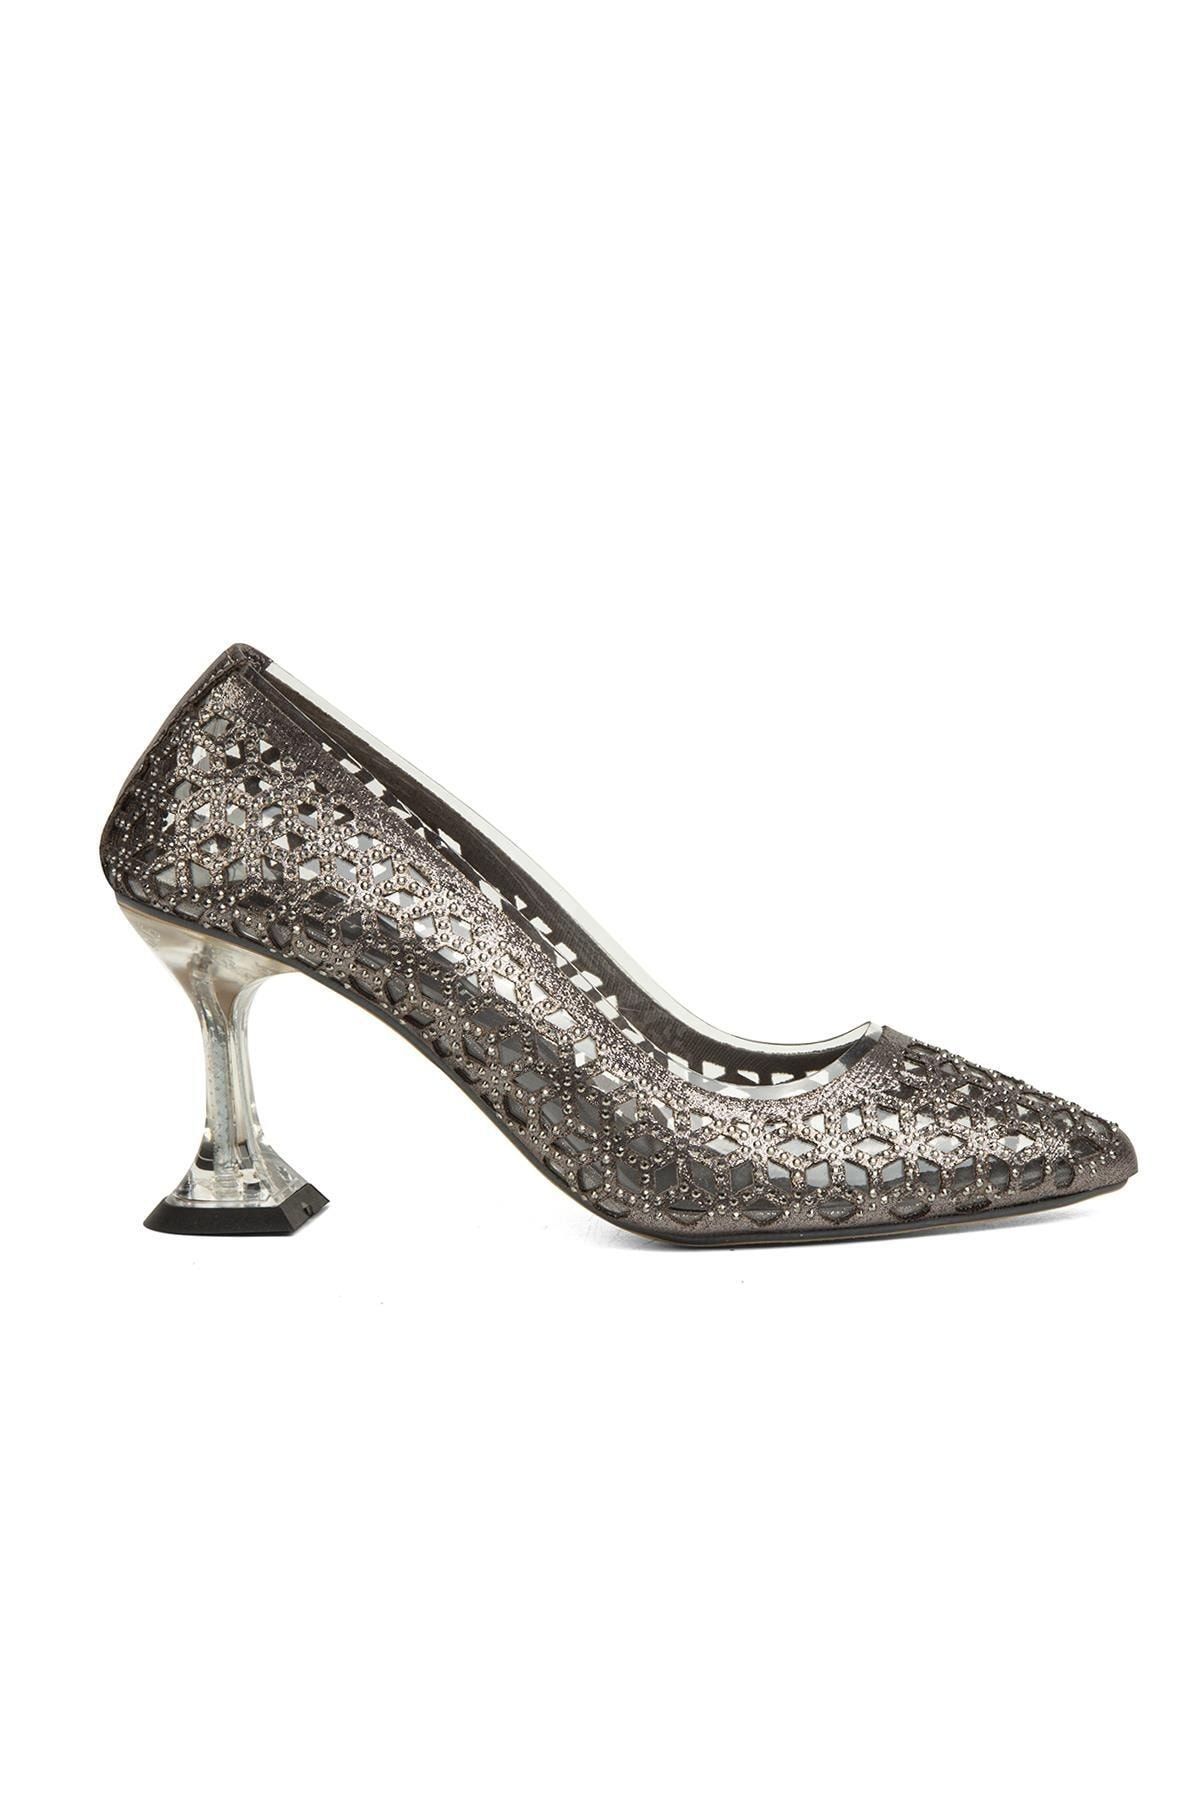 Pierre Cardin ® | Pc-51744-3478 Platin - Kadın Topuklu Ayakkabı